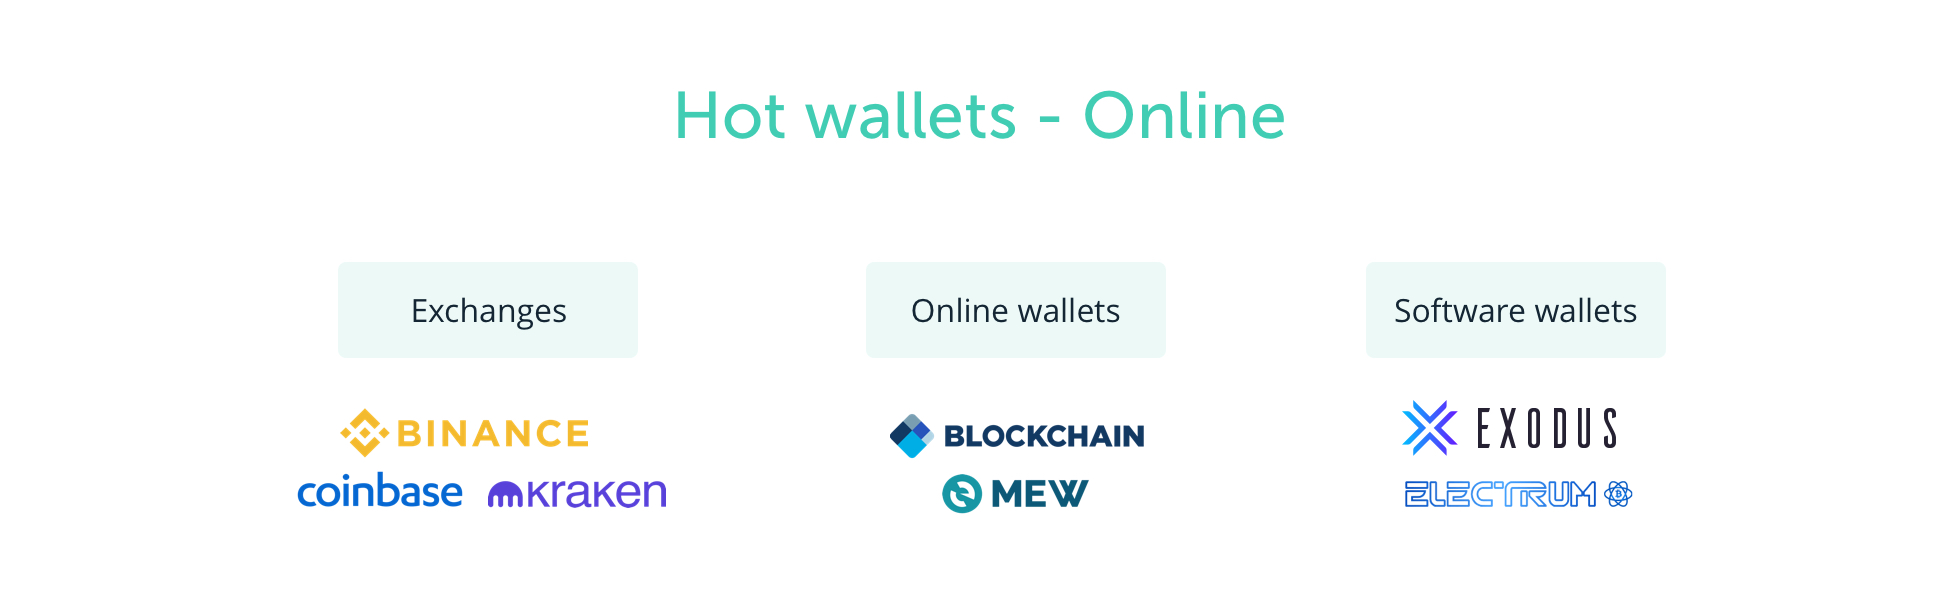 hot wallets - online wallets